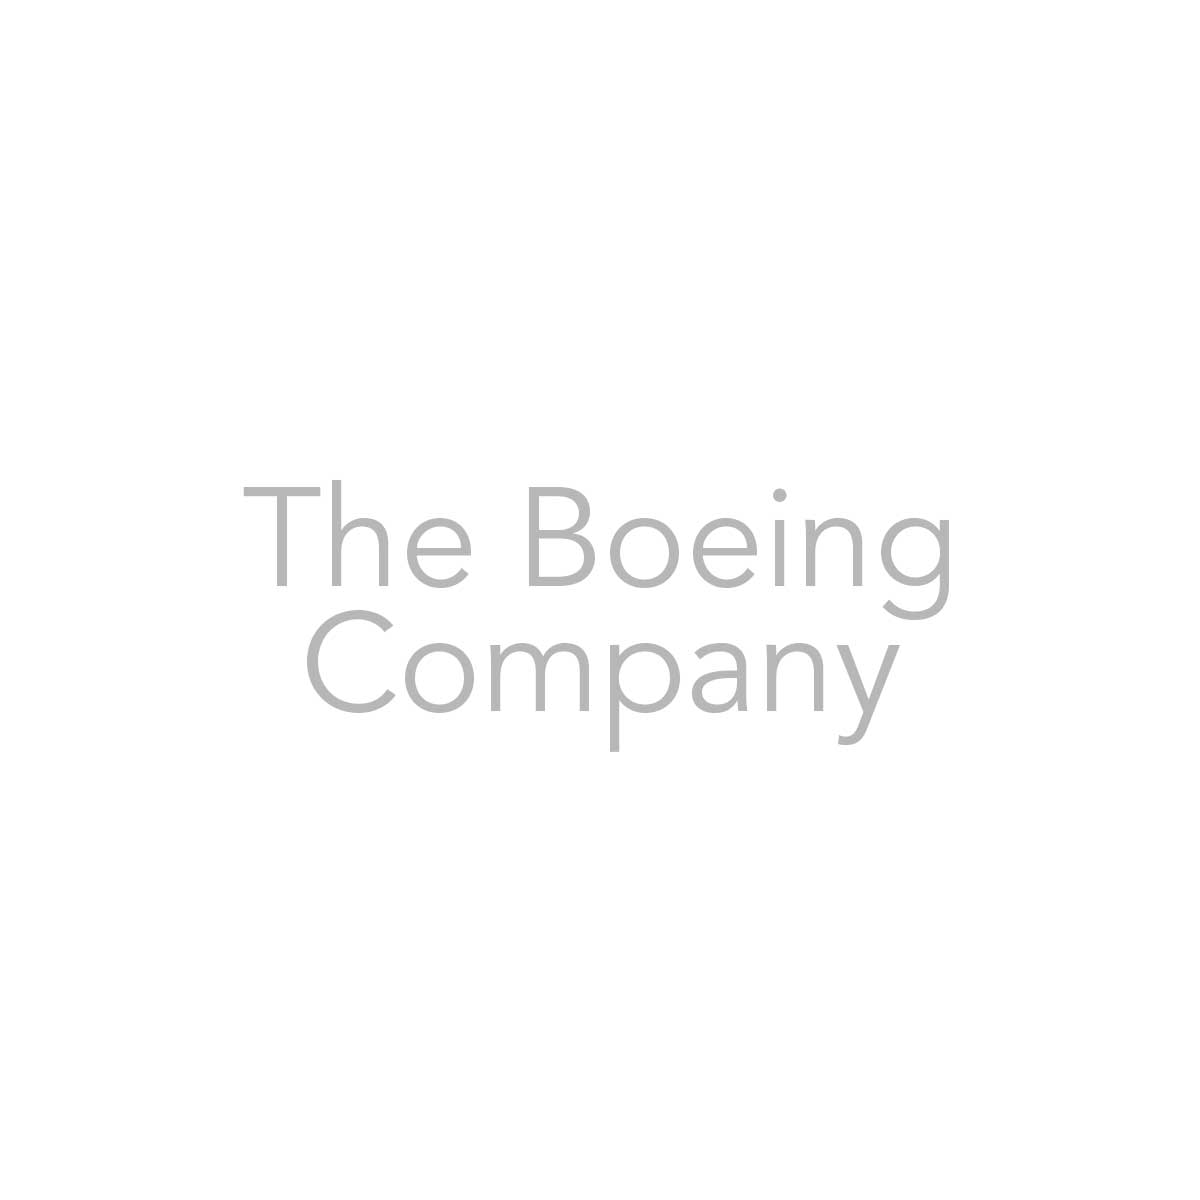 Il logo della società Boeing nella pagina dei partner